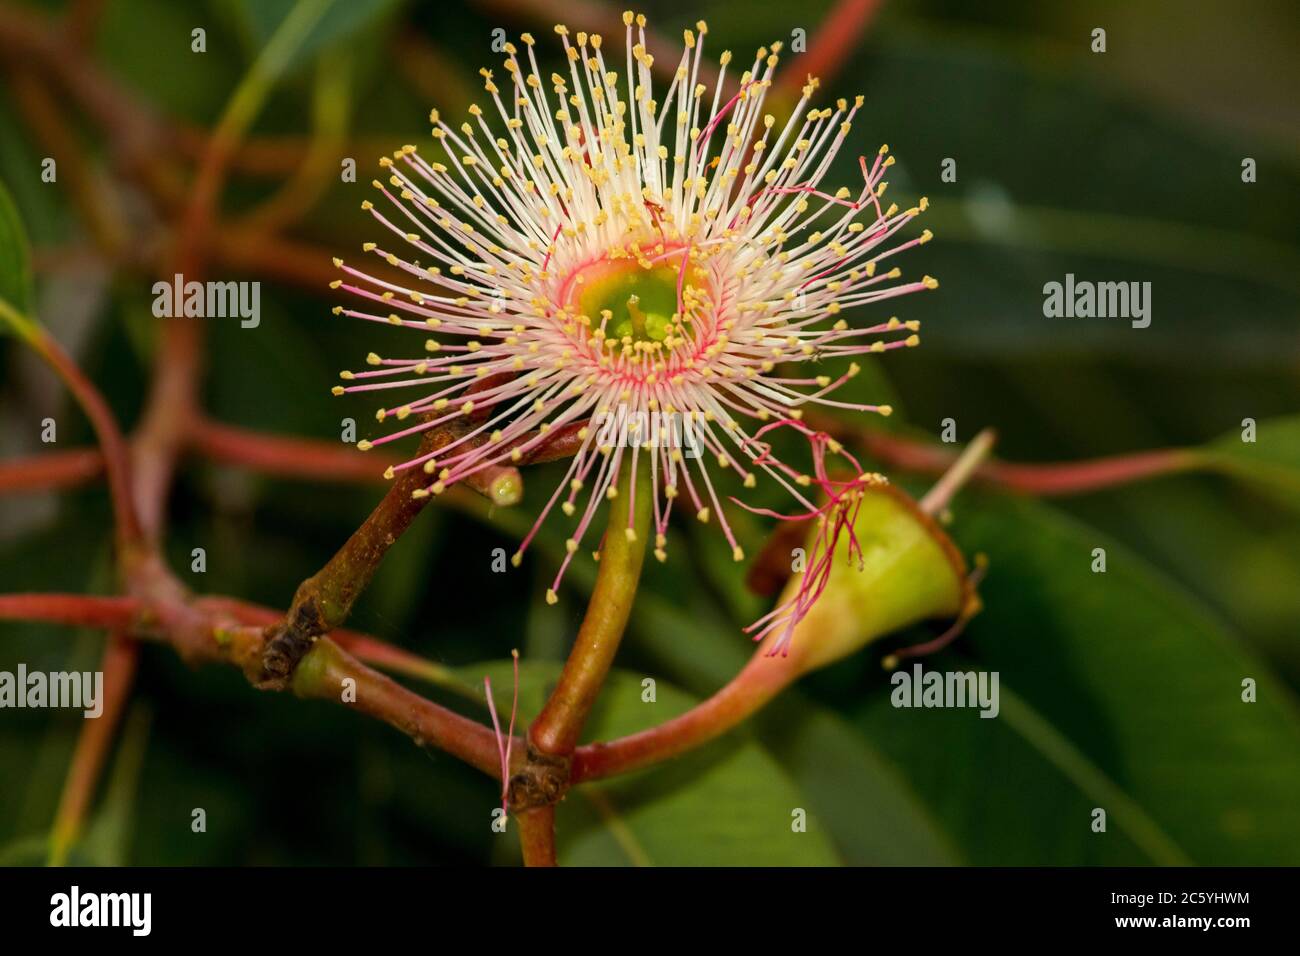 Gros plan de fleur rose pâle/crème de gomme, Eucalyptus sur fond de feuillage vert émeraude en Australie Banque D'Images